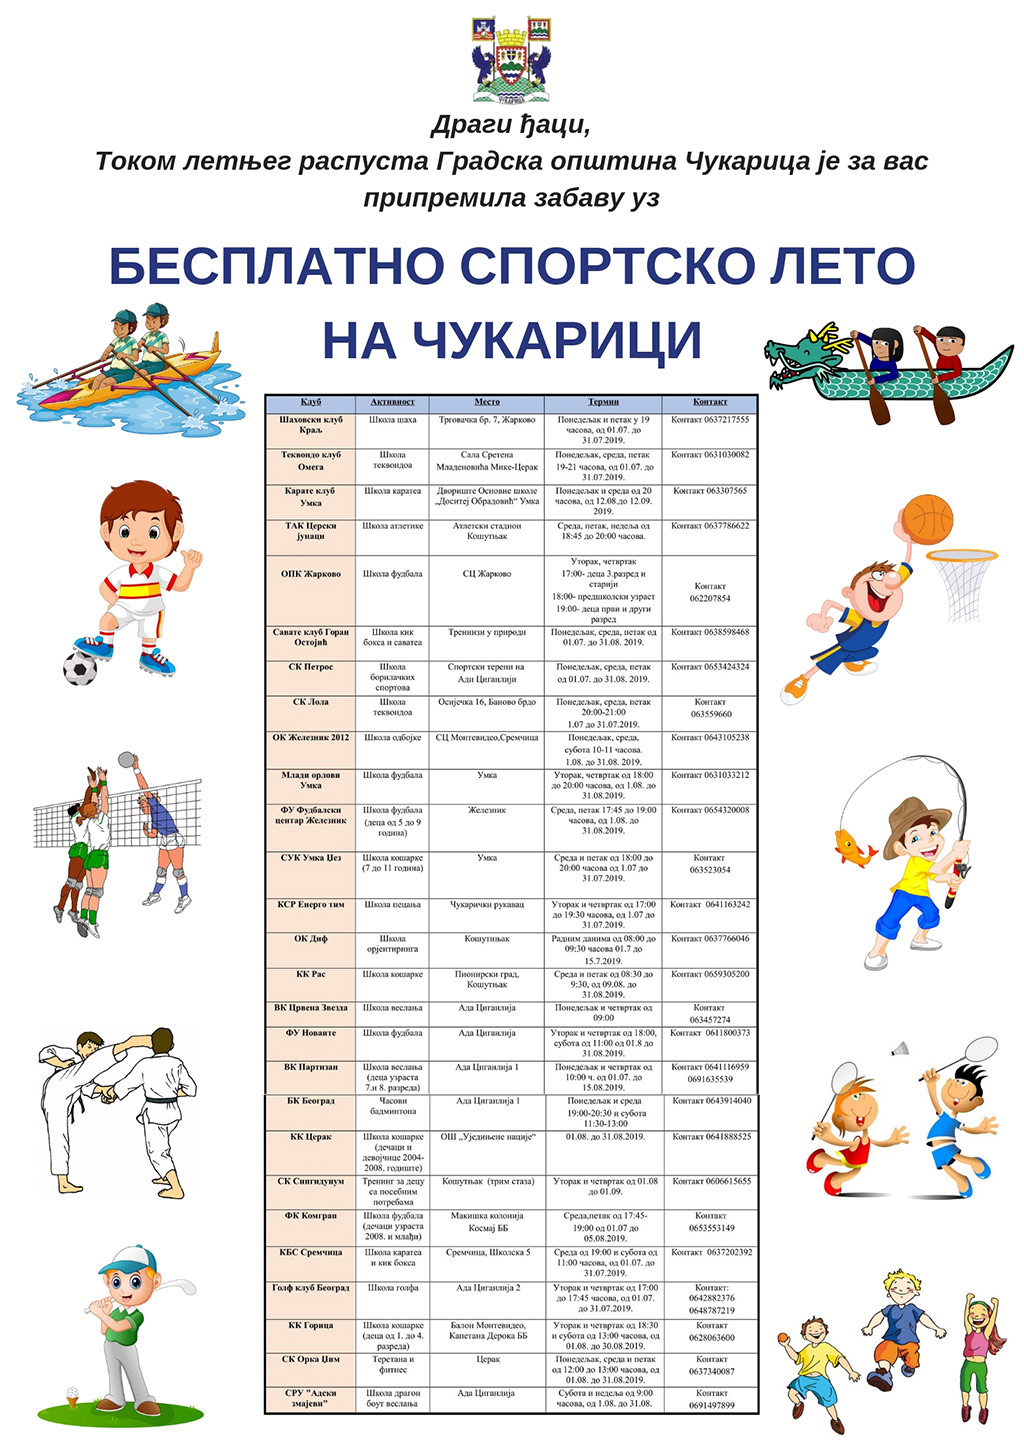 Бесплатно спортско лето за основце са Чукарице